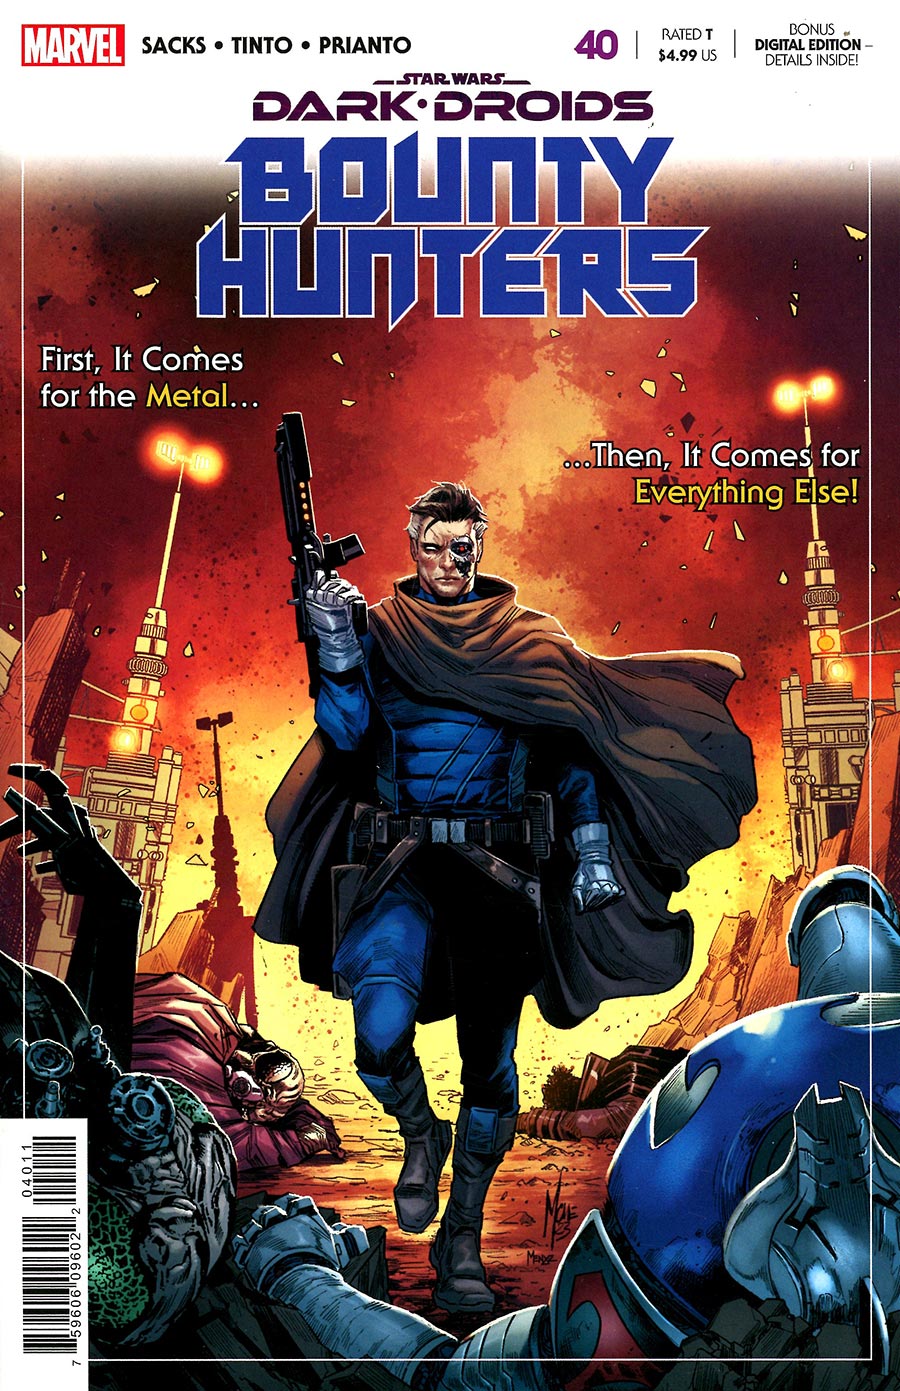 Star Wars Bounty Hunters #40 Cover A Regular Marco Checchetto Cover (Dark Droids Tie-In)